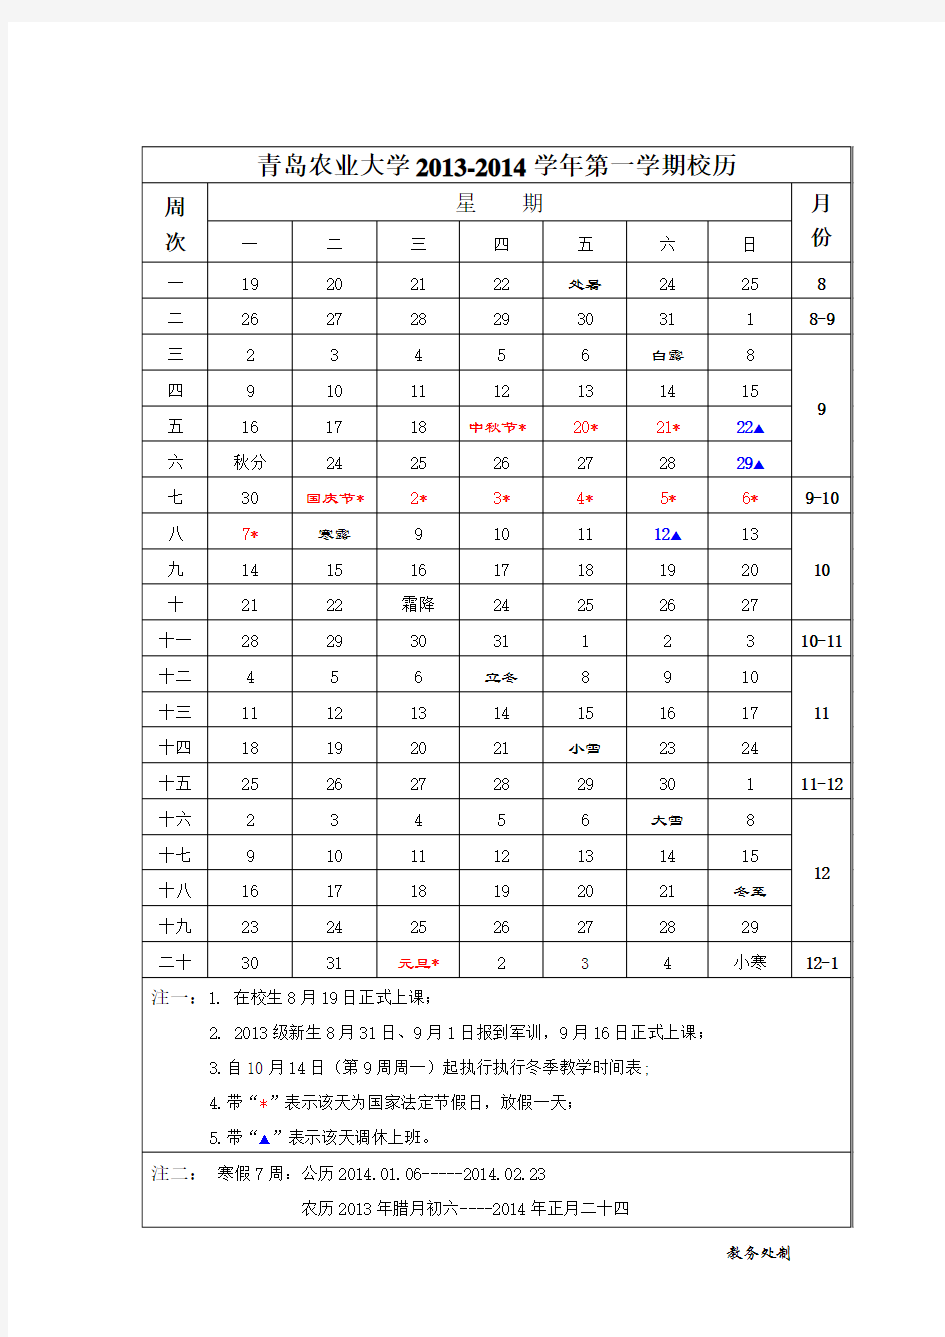 青岛农业大学2013-2014学年第一学期校历